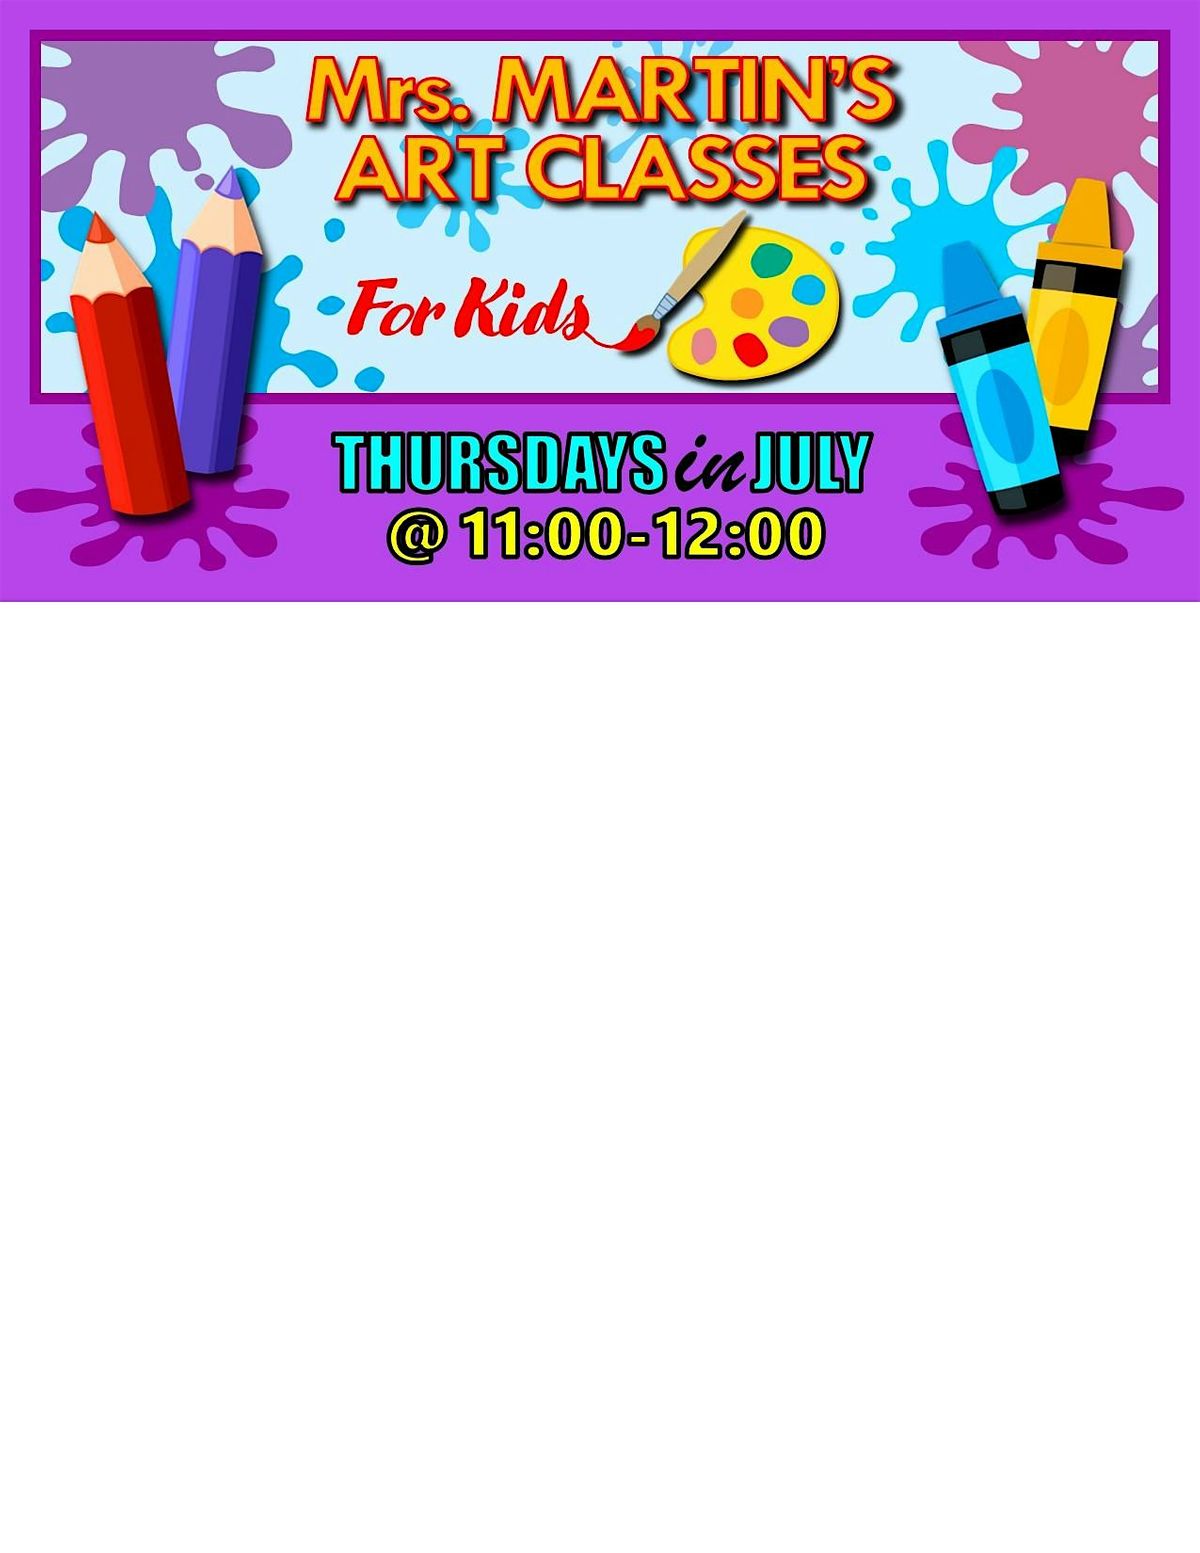 Mrs. Martin's Art Classes in JULY ~Thursdays @11:00-12:00